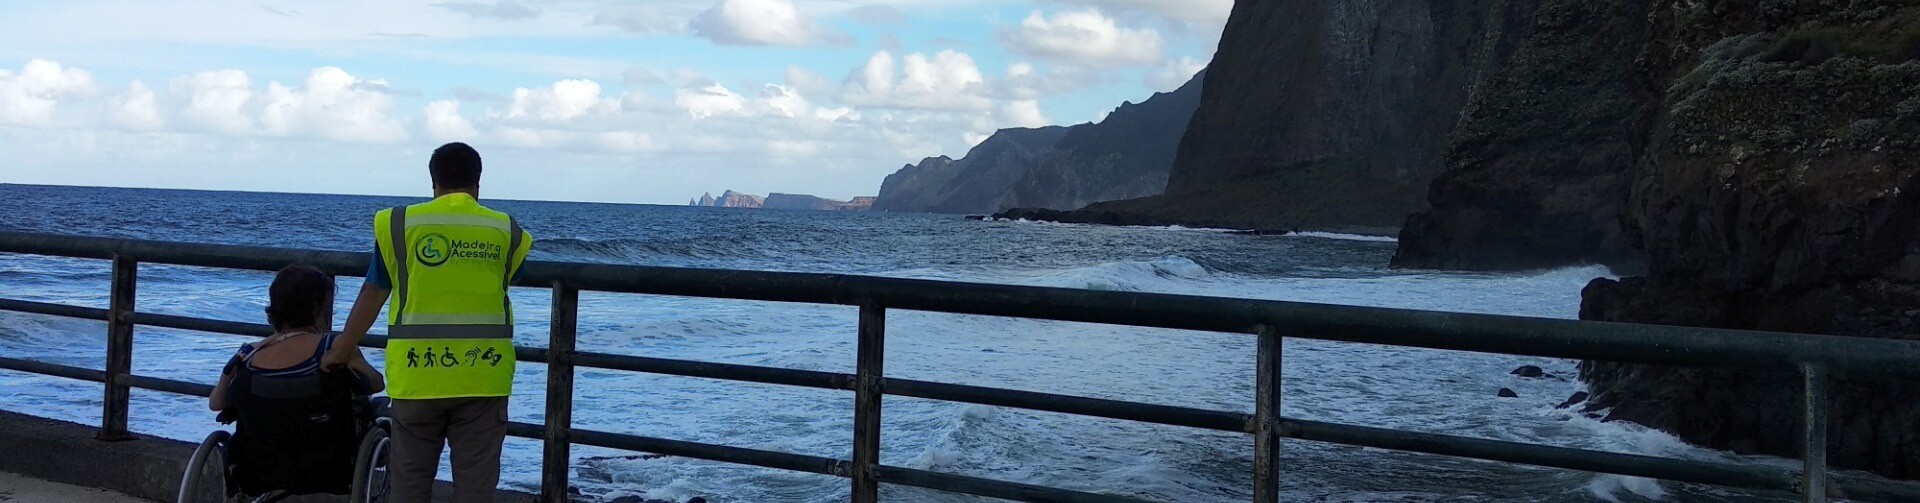 Excursão de dia inteiro acessível a cadeira de rodas na Madeira